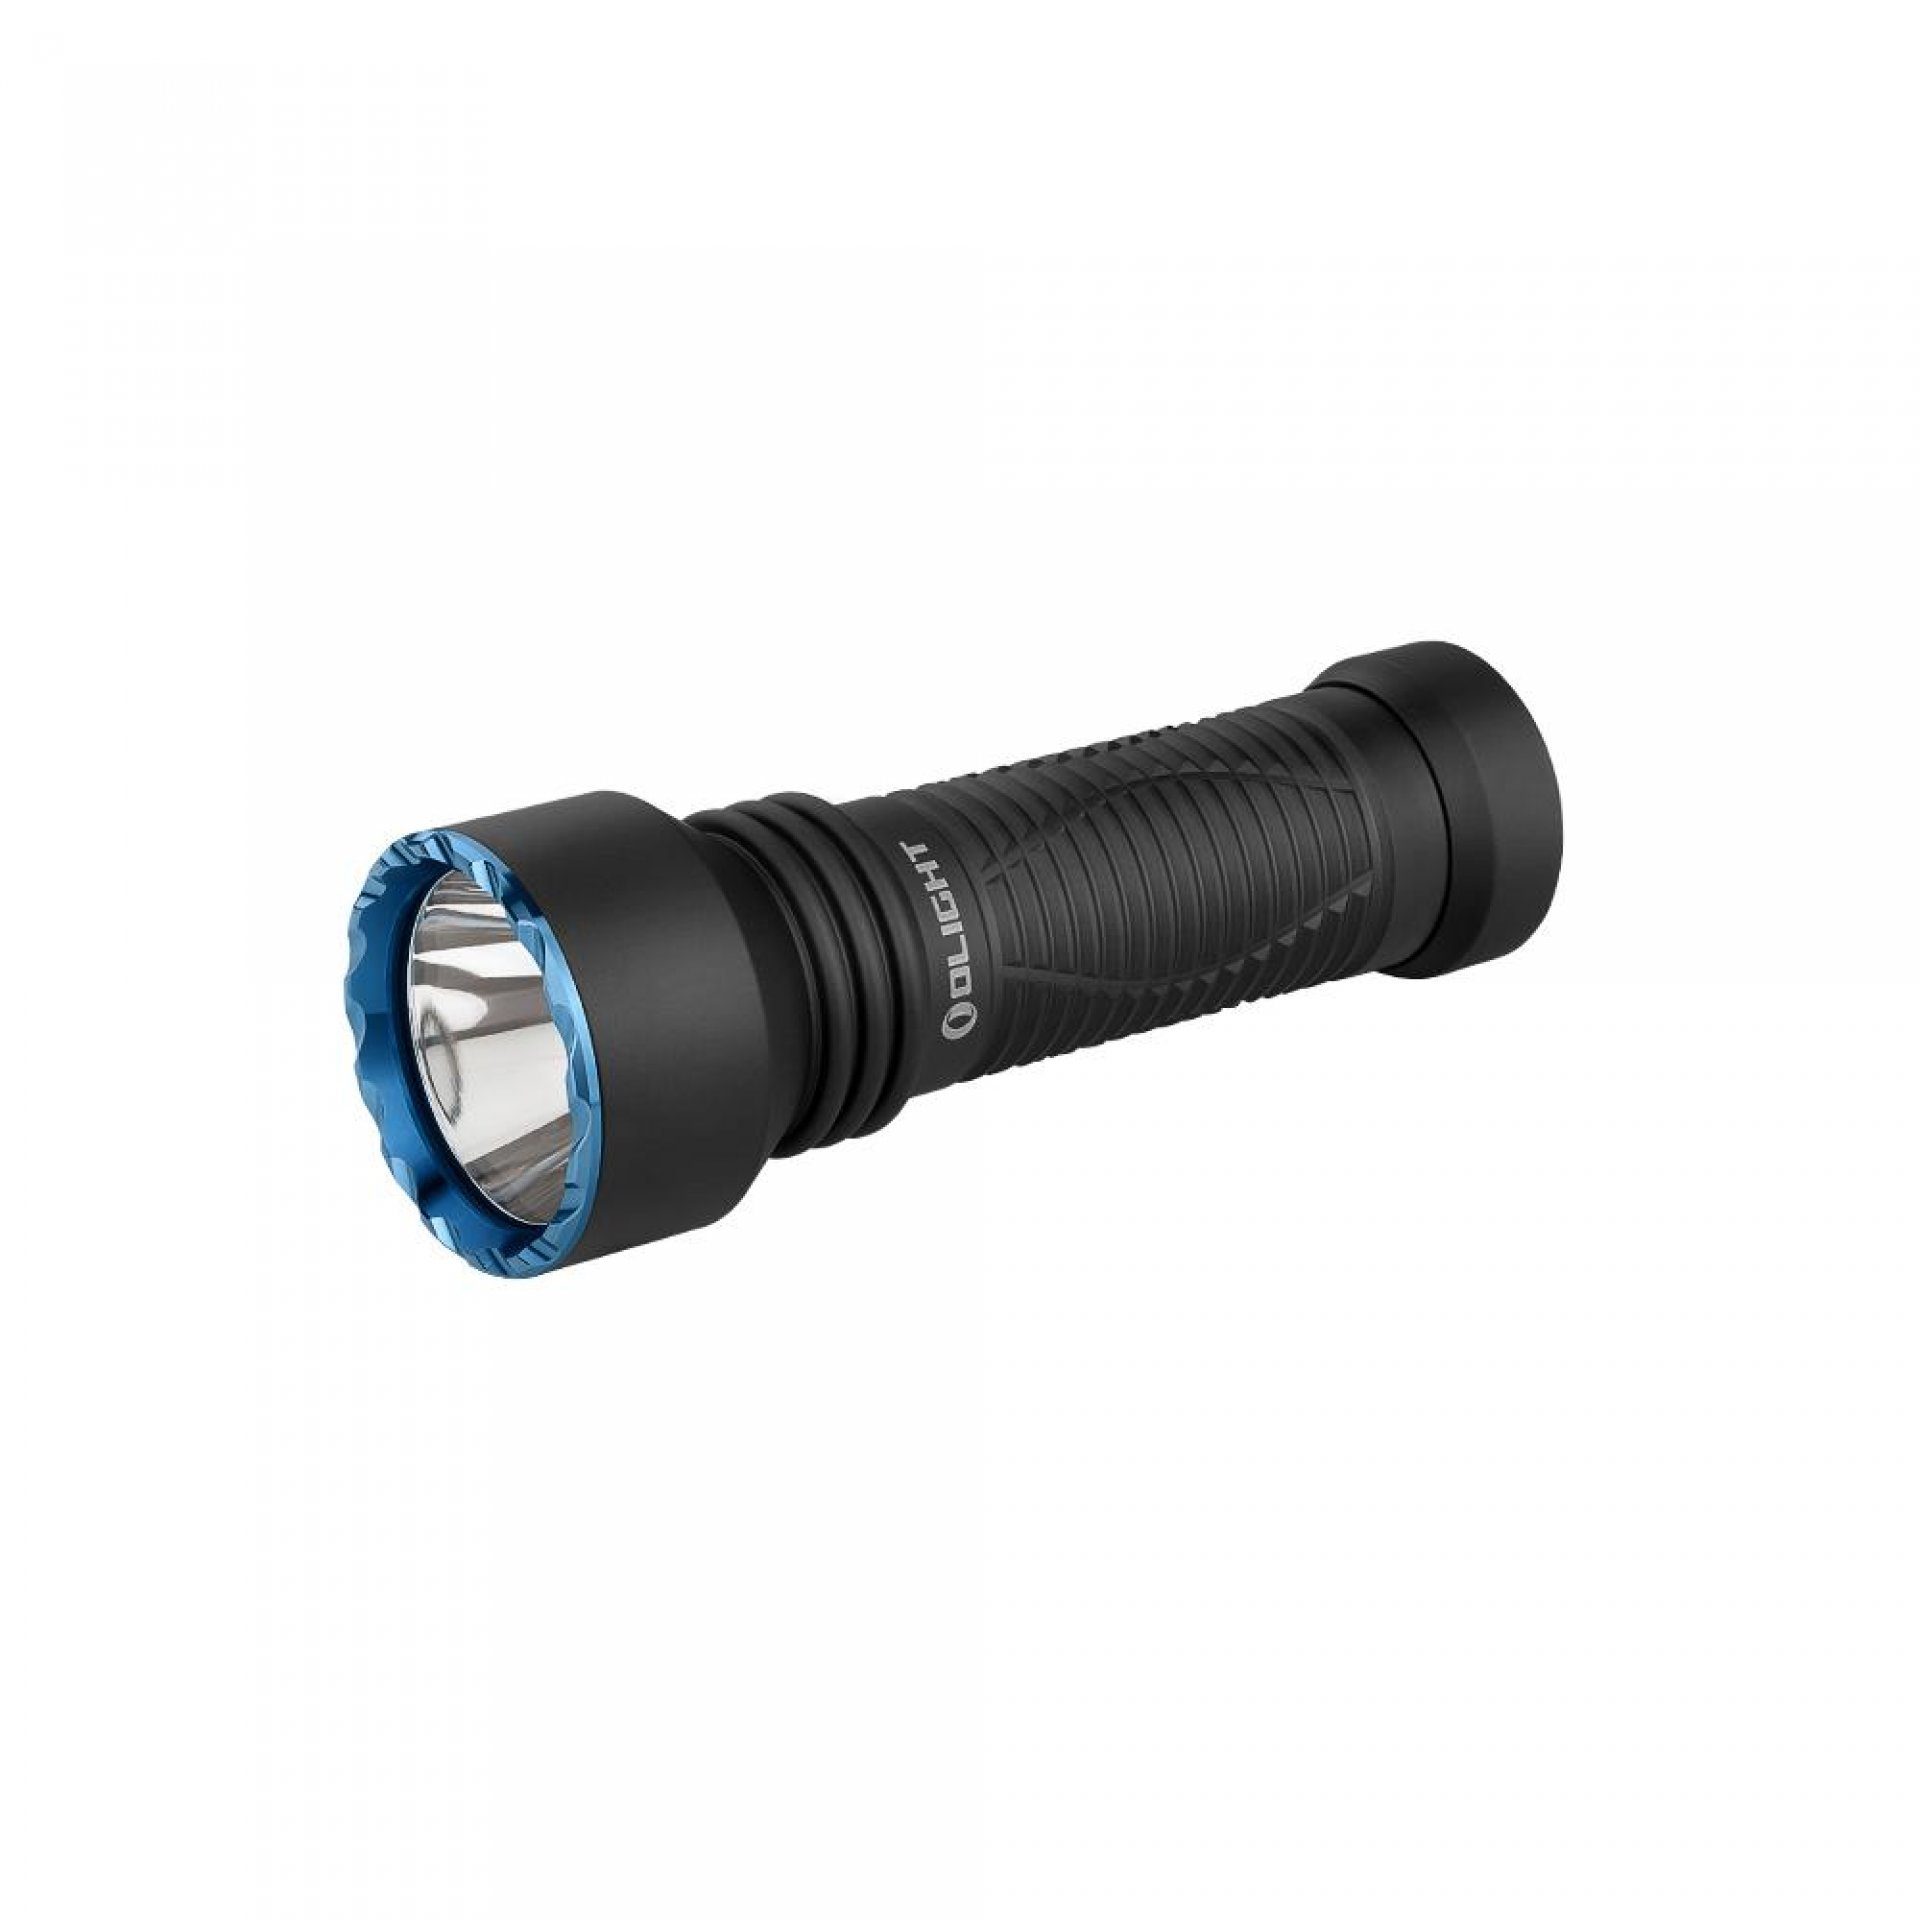 OLIGHT LED Taschenlampe Javelot Mini LED taktische Taschenlampe mit einer runden Lichtquelle, wiederaufbare IPX8 zoombare Handlampe für Notfall, Patrouille, Camping